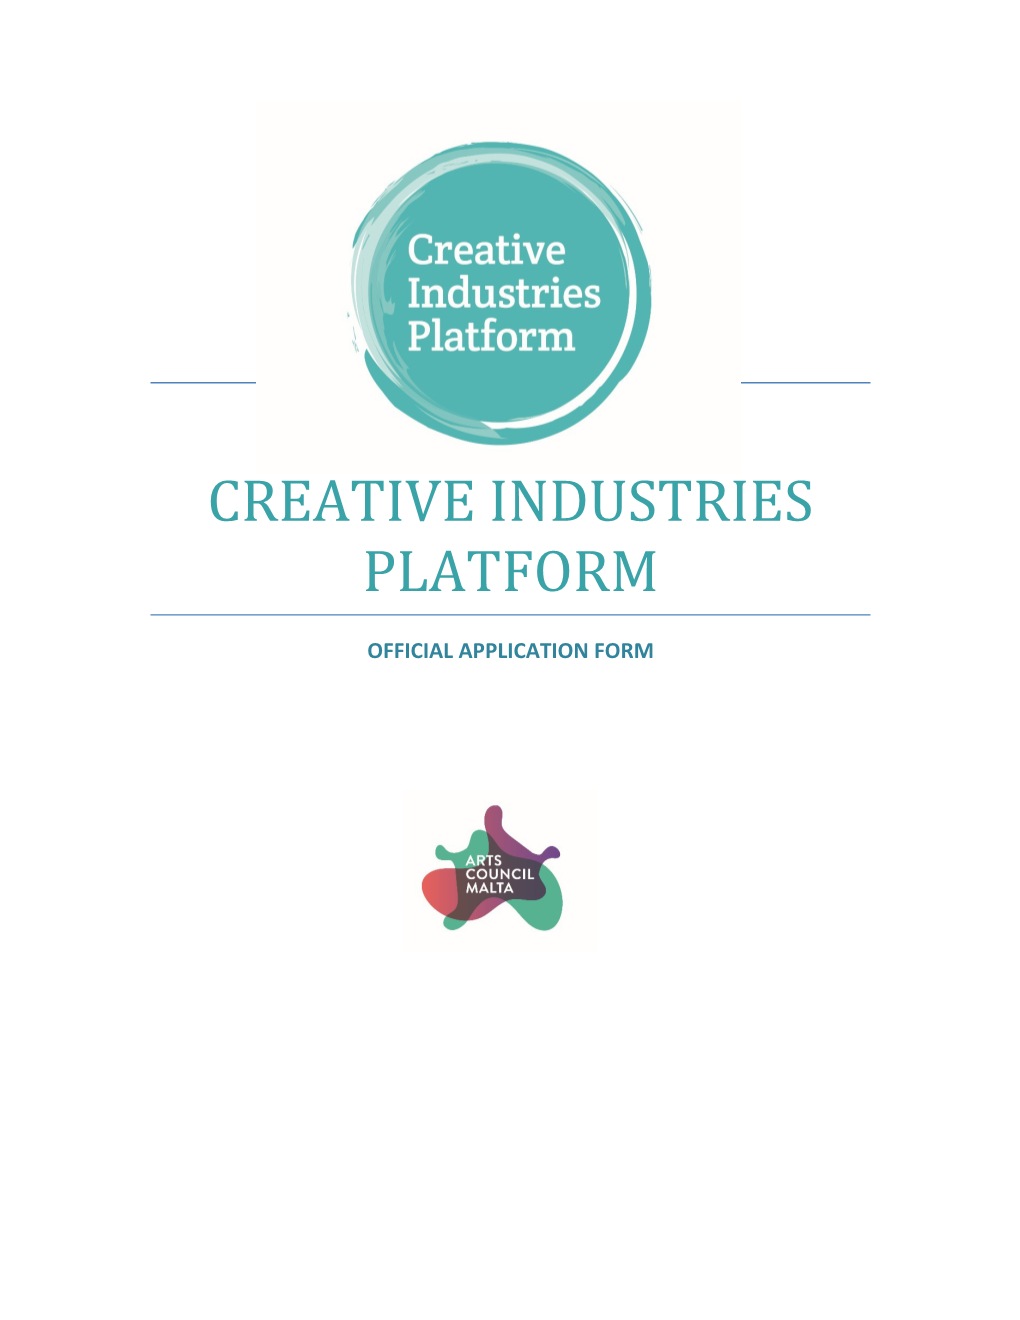 Creative Industries Platform